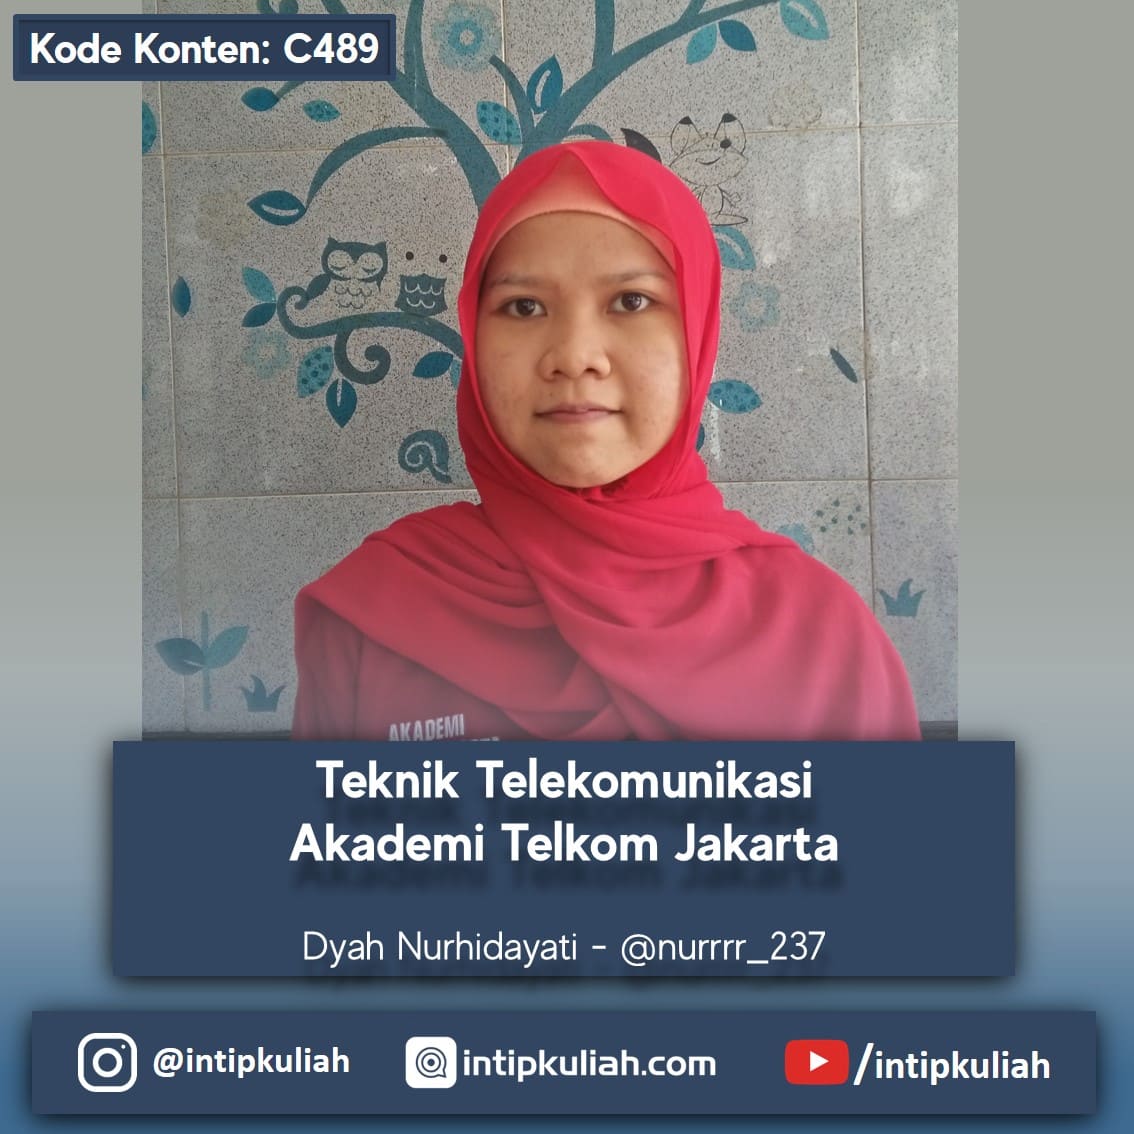 Teknik Telekomunikasi Akademi Telkom Jakarta (Dyah)